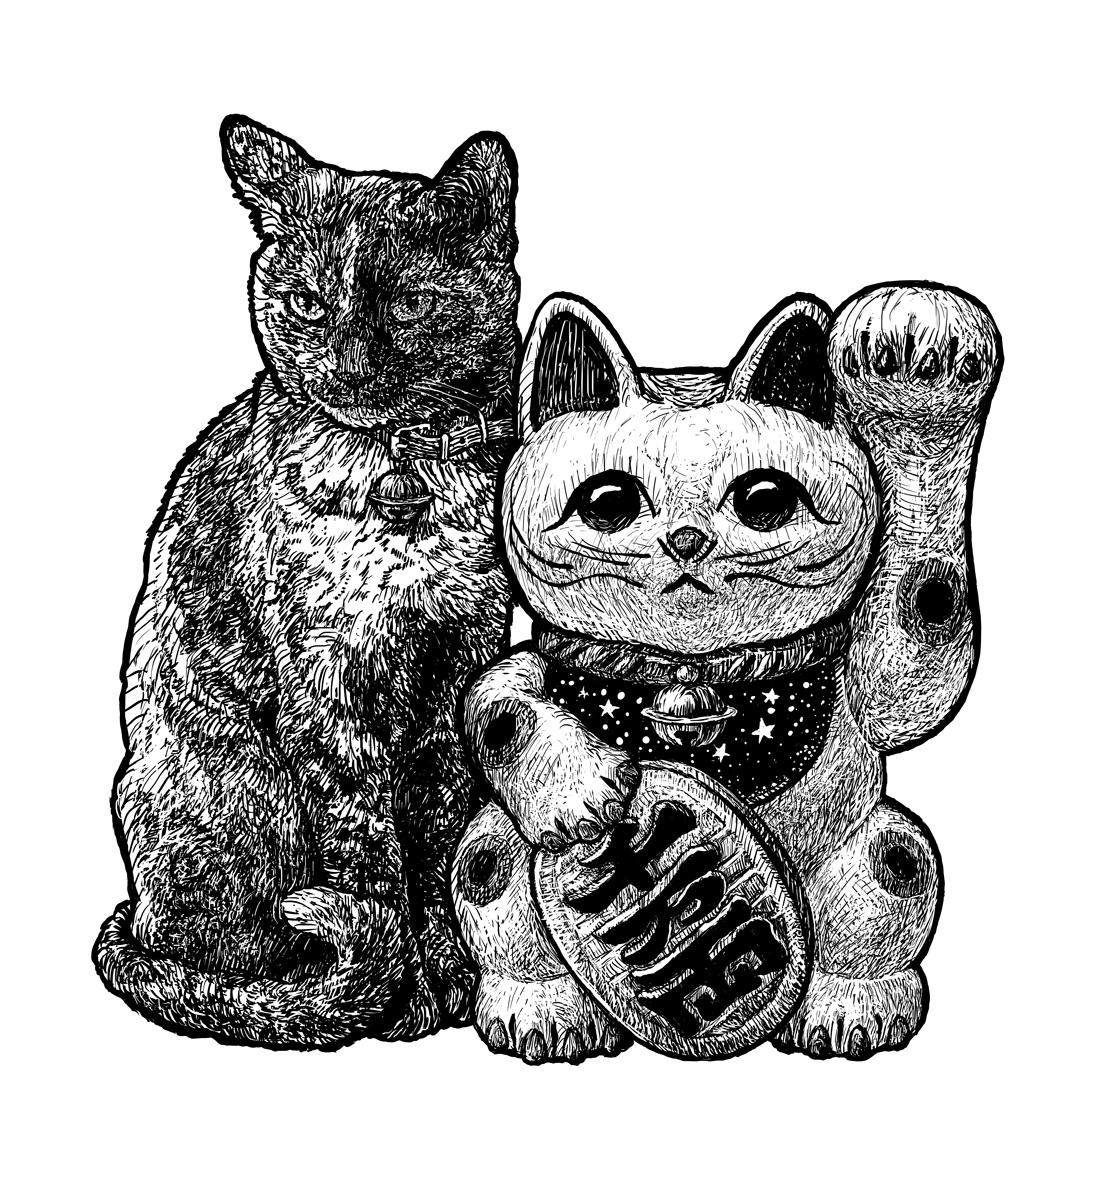 招き猫と猫 完成しました!
いつか招き猫を描いてみたかったので
皆様に幸運を招きますように(^^)

#招き猫 #まねきねこ #西浦康太 #kota_nishiura  #猫 #ねこ #cat #制作過程 #動物 #animal #作品 #アート #art #artwork #Artist 